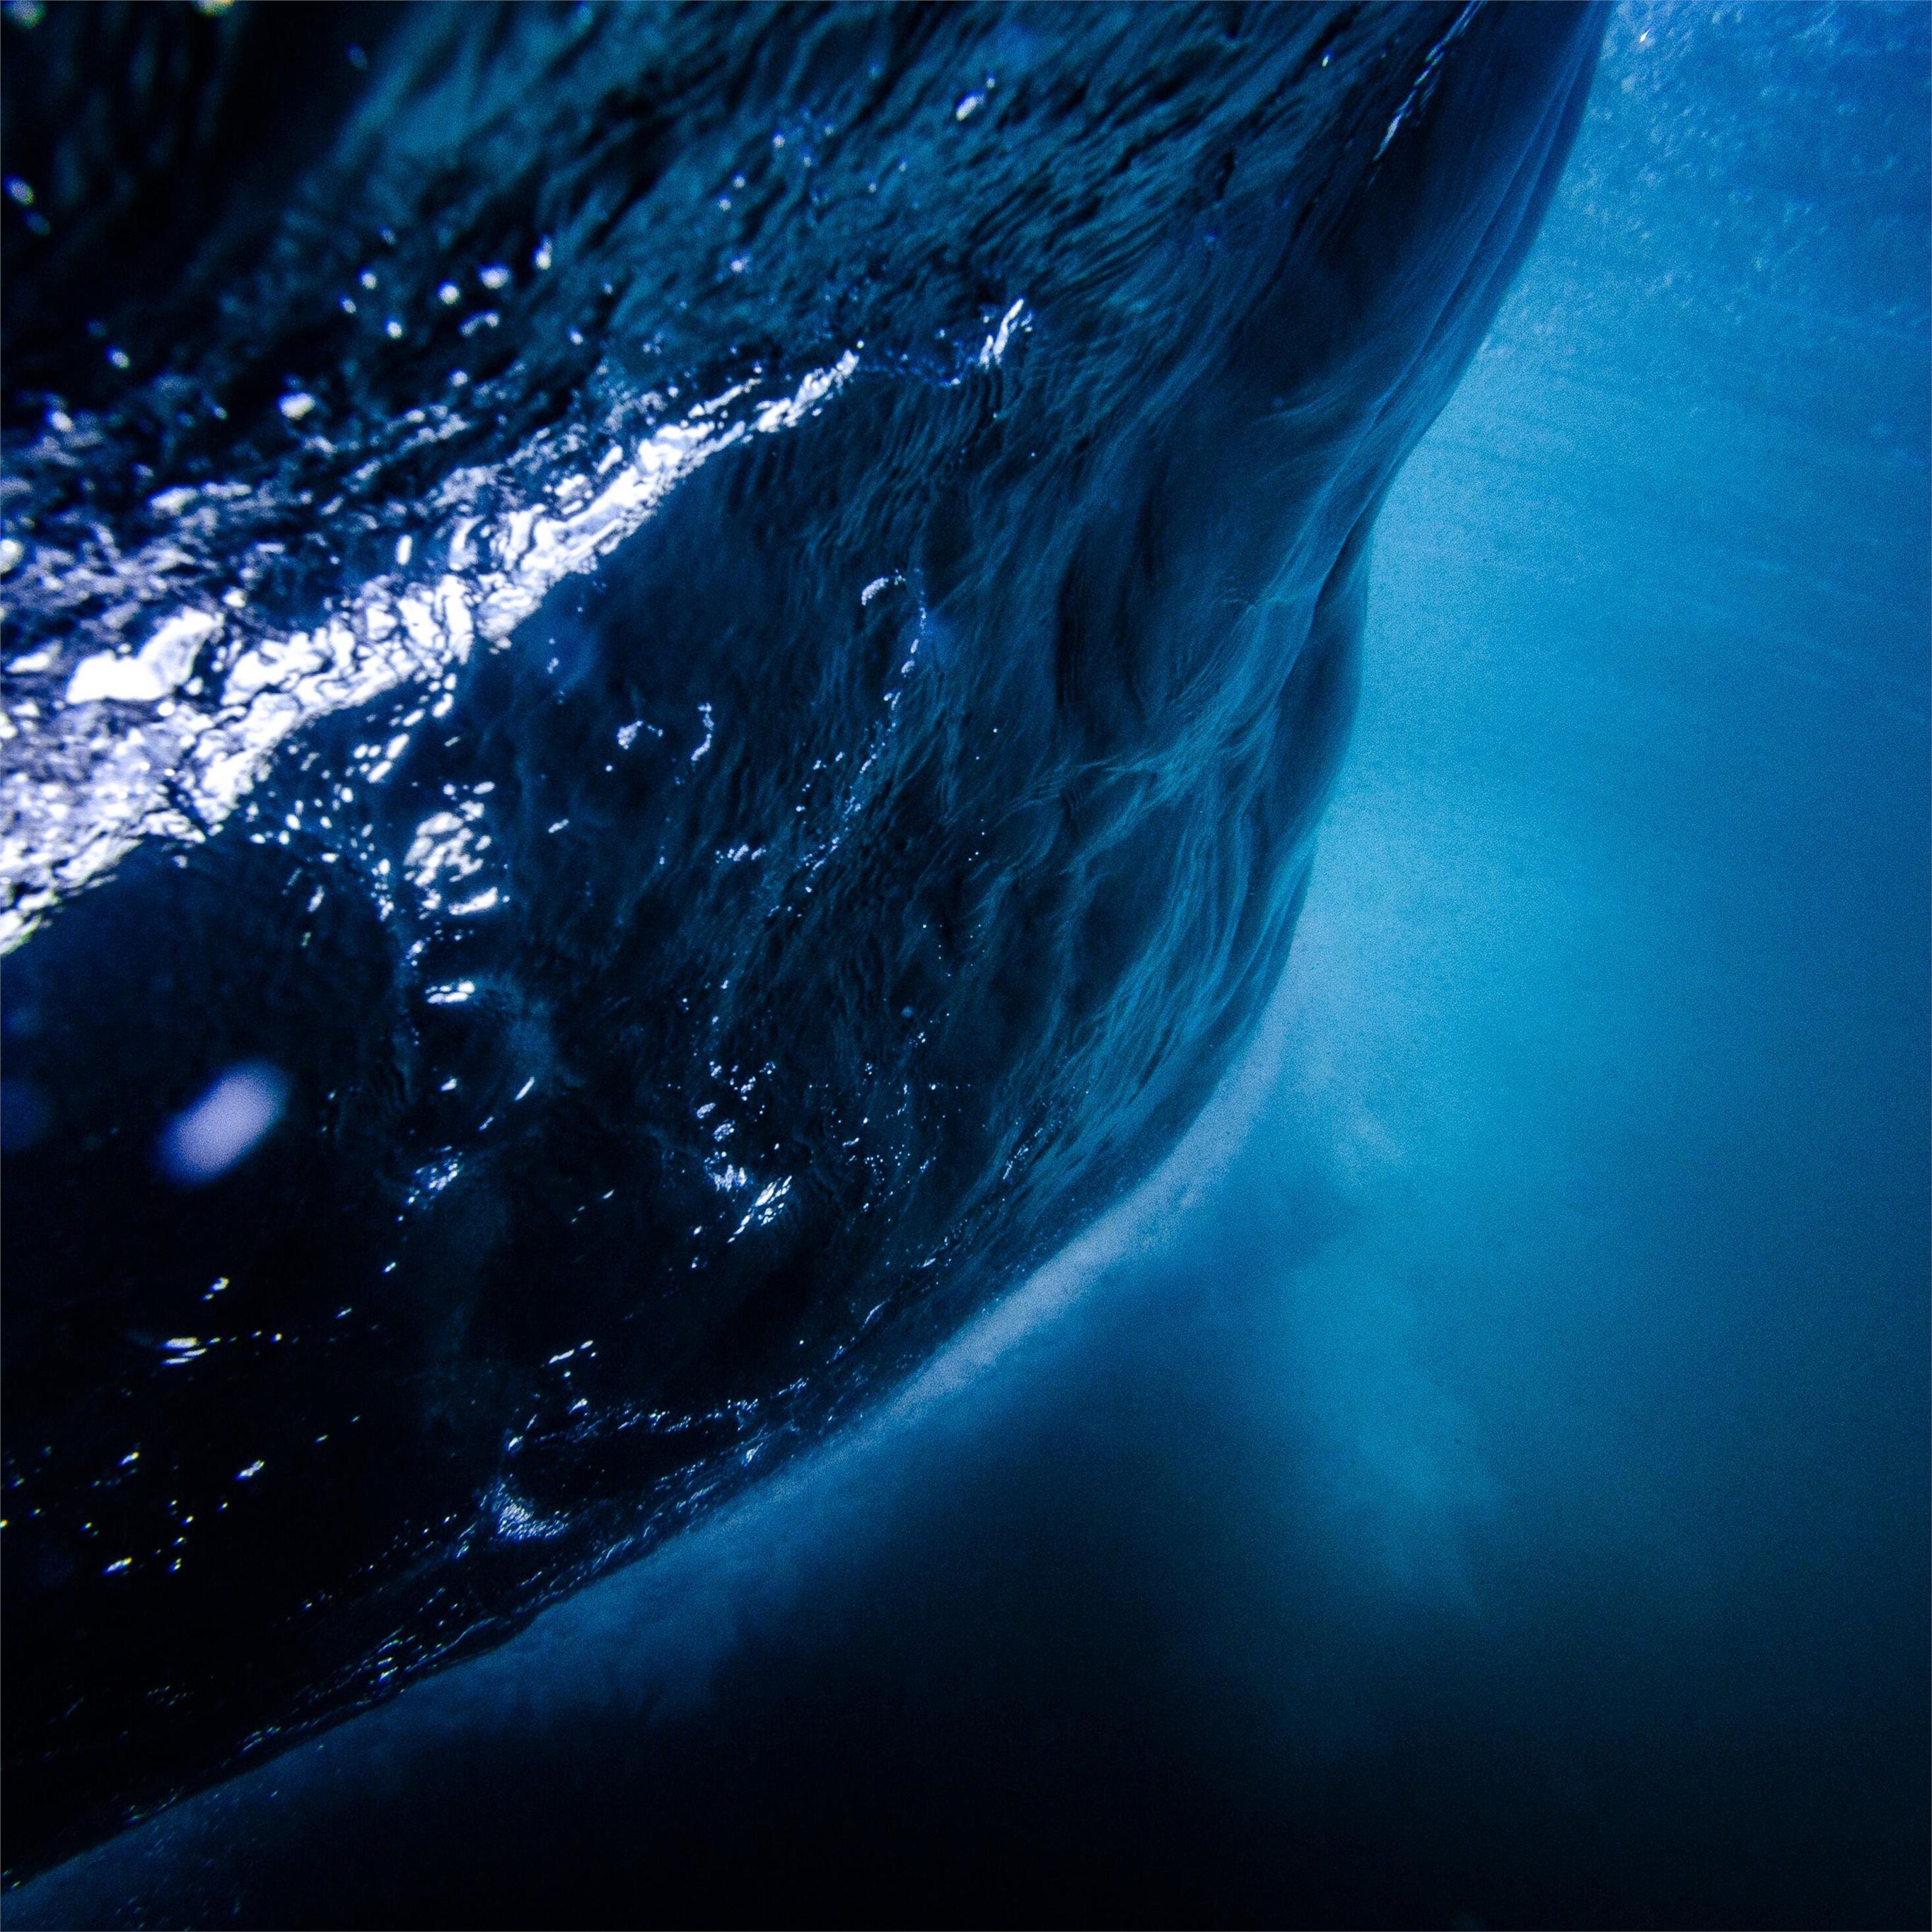 Bạn sẽ yêu thích những hình nền 4K cho iPad với đại dương xanh và dưới nước đầy sức sống. Những hình ảnh của đại dương sẽ khiến bạn cảm thấy gần gũi với thiên nhiên và mang lại cảm giác thư giãn.